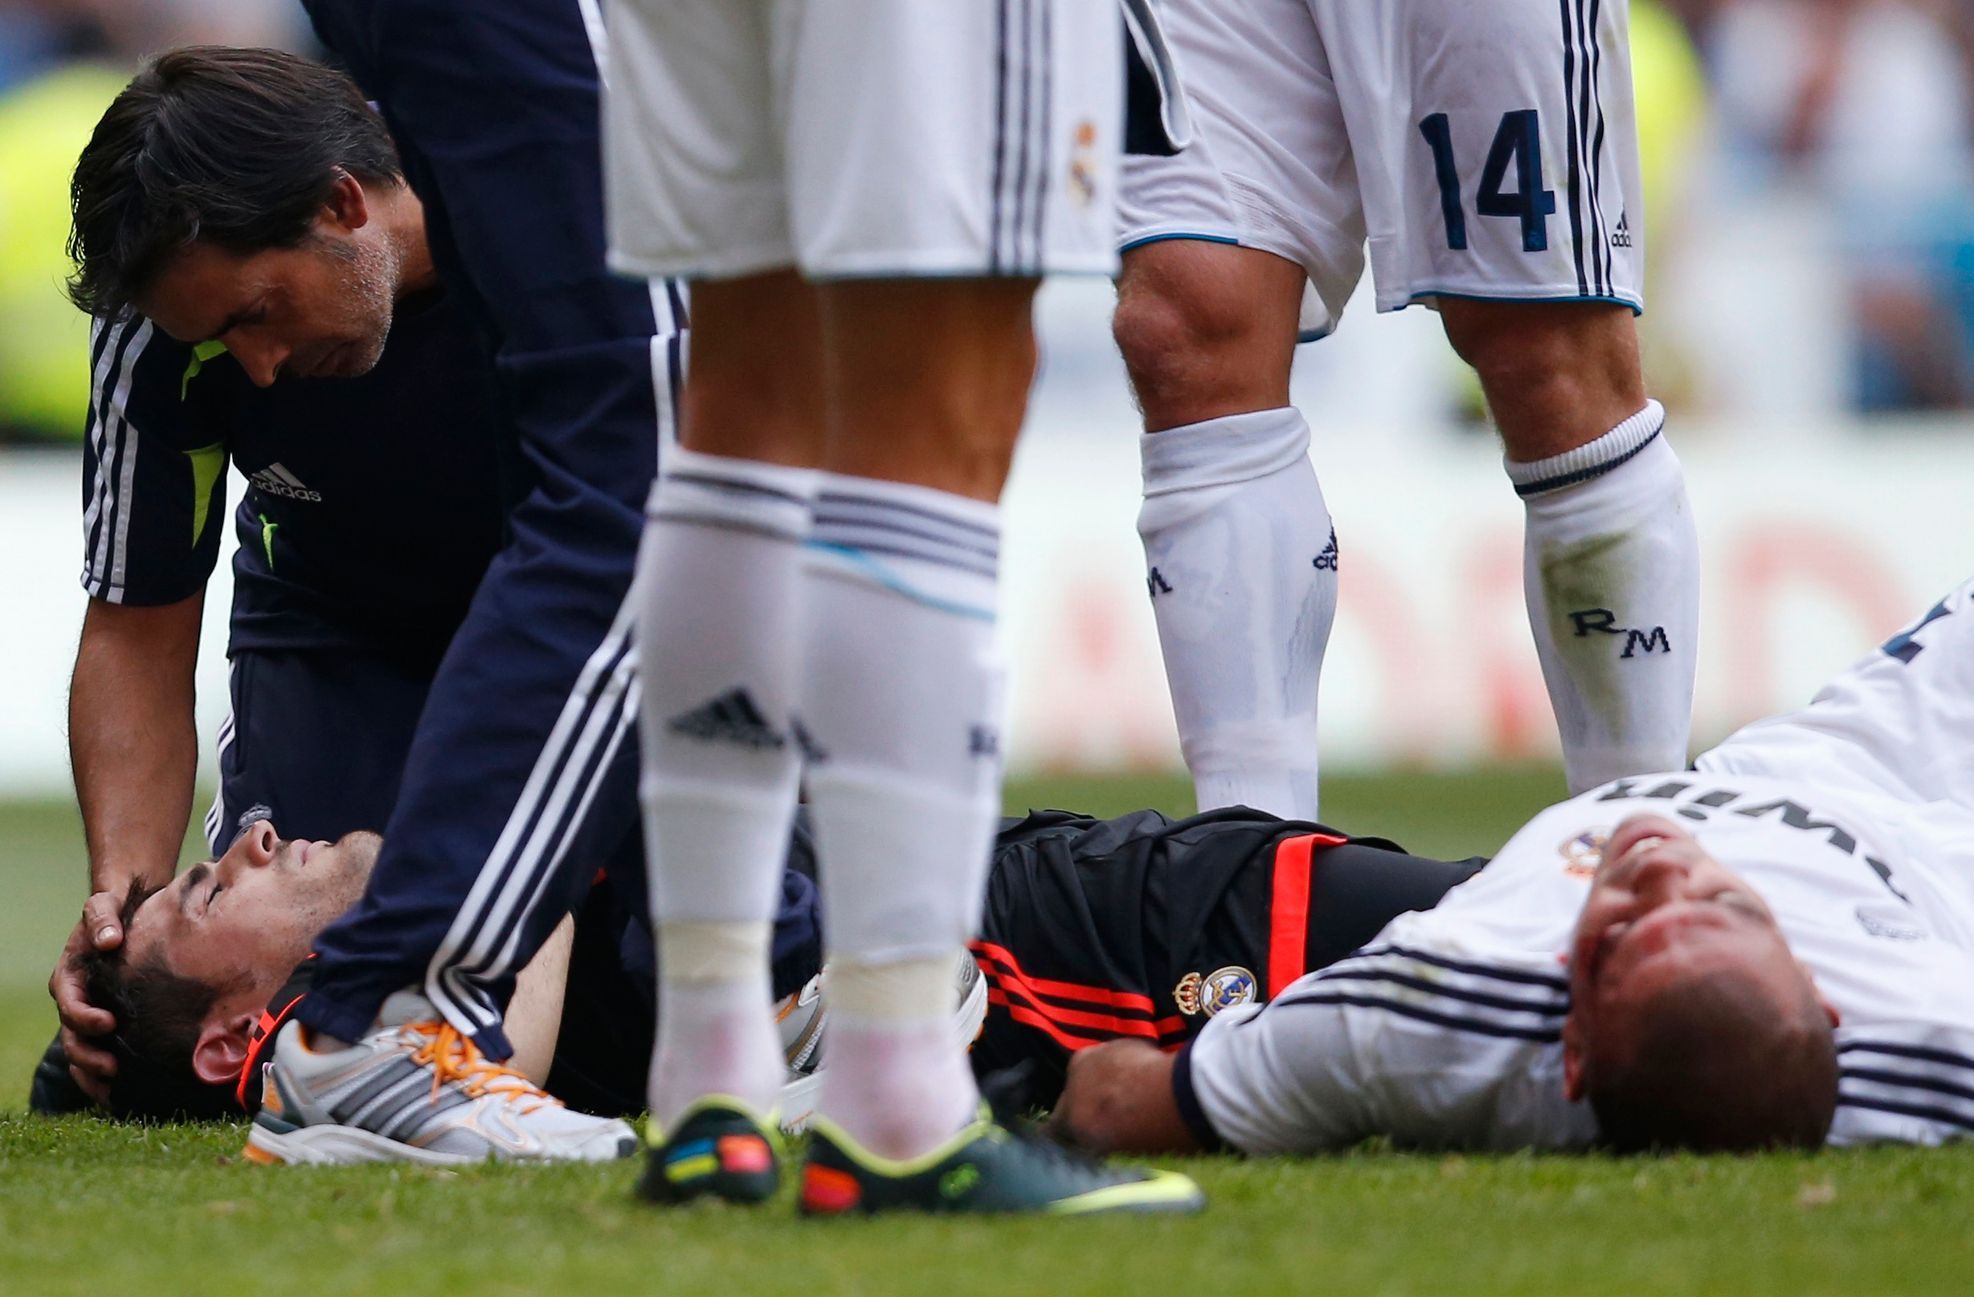 Zranění fotbalisté Realu Madrid Casillas a Pepe